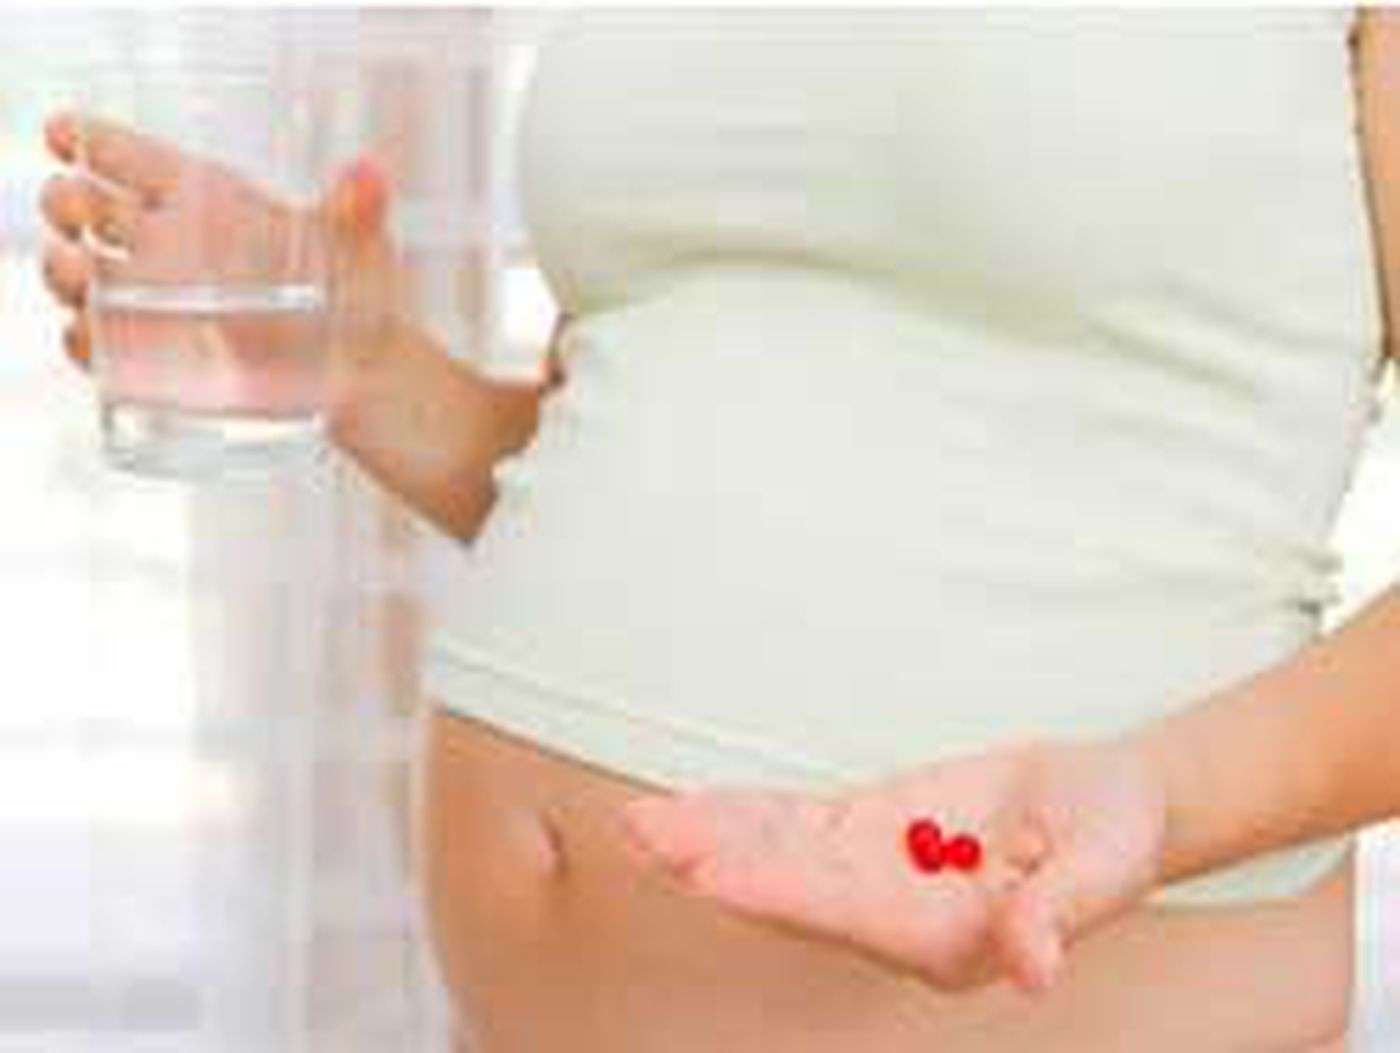 Pregnancy & prescription drugs